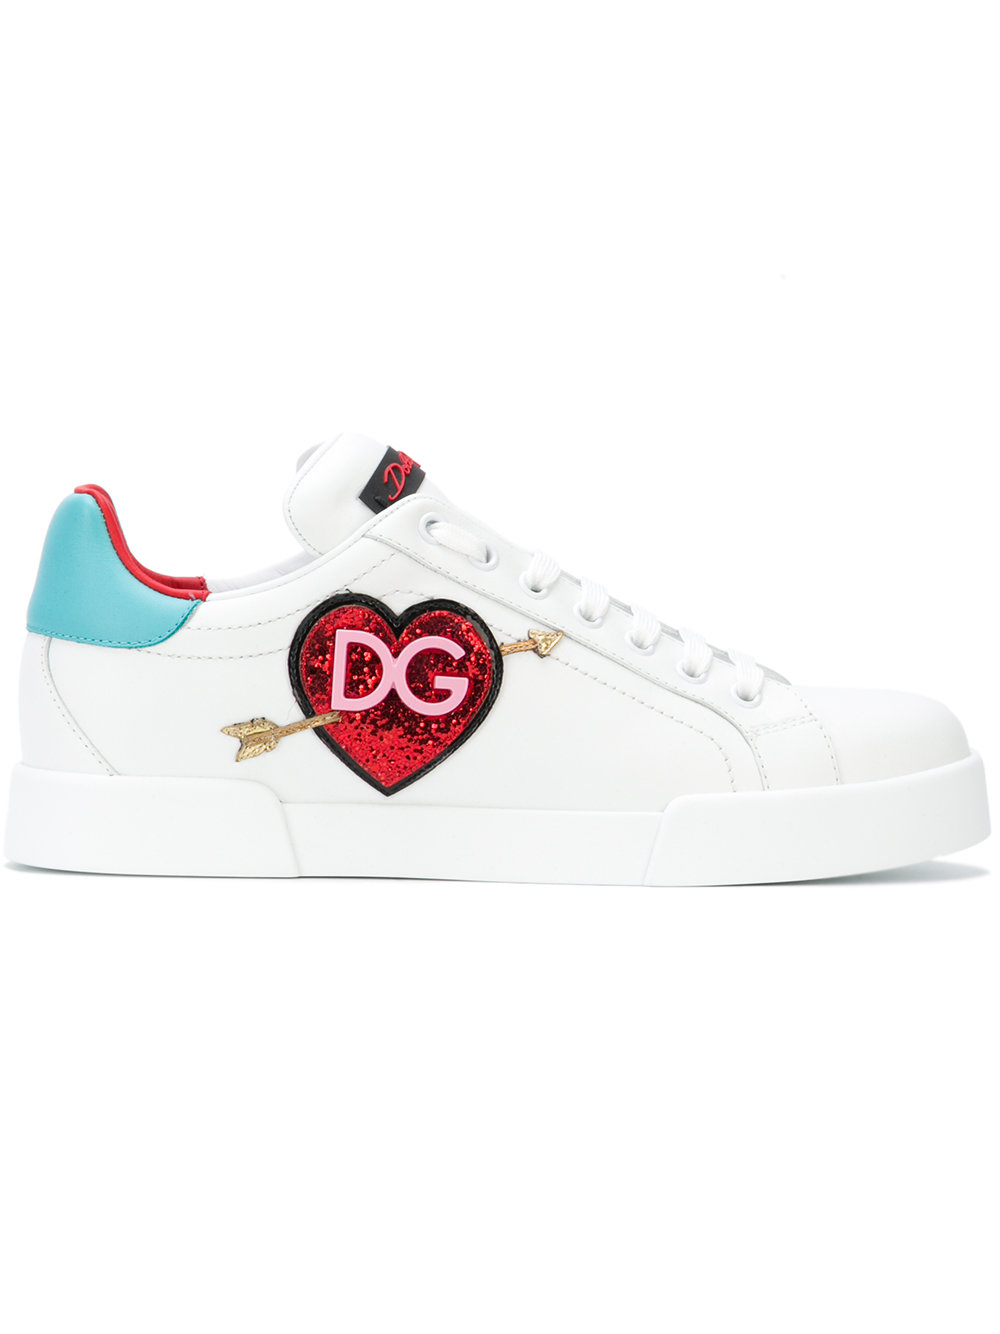 Dolce & Gabbana Portofino Patch Sneakers